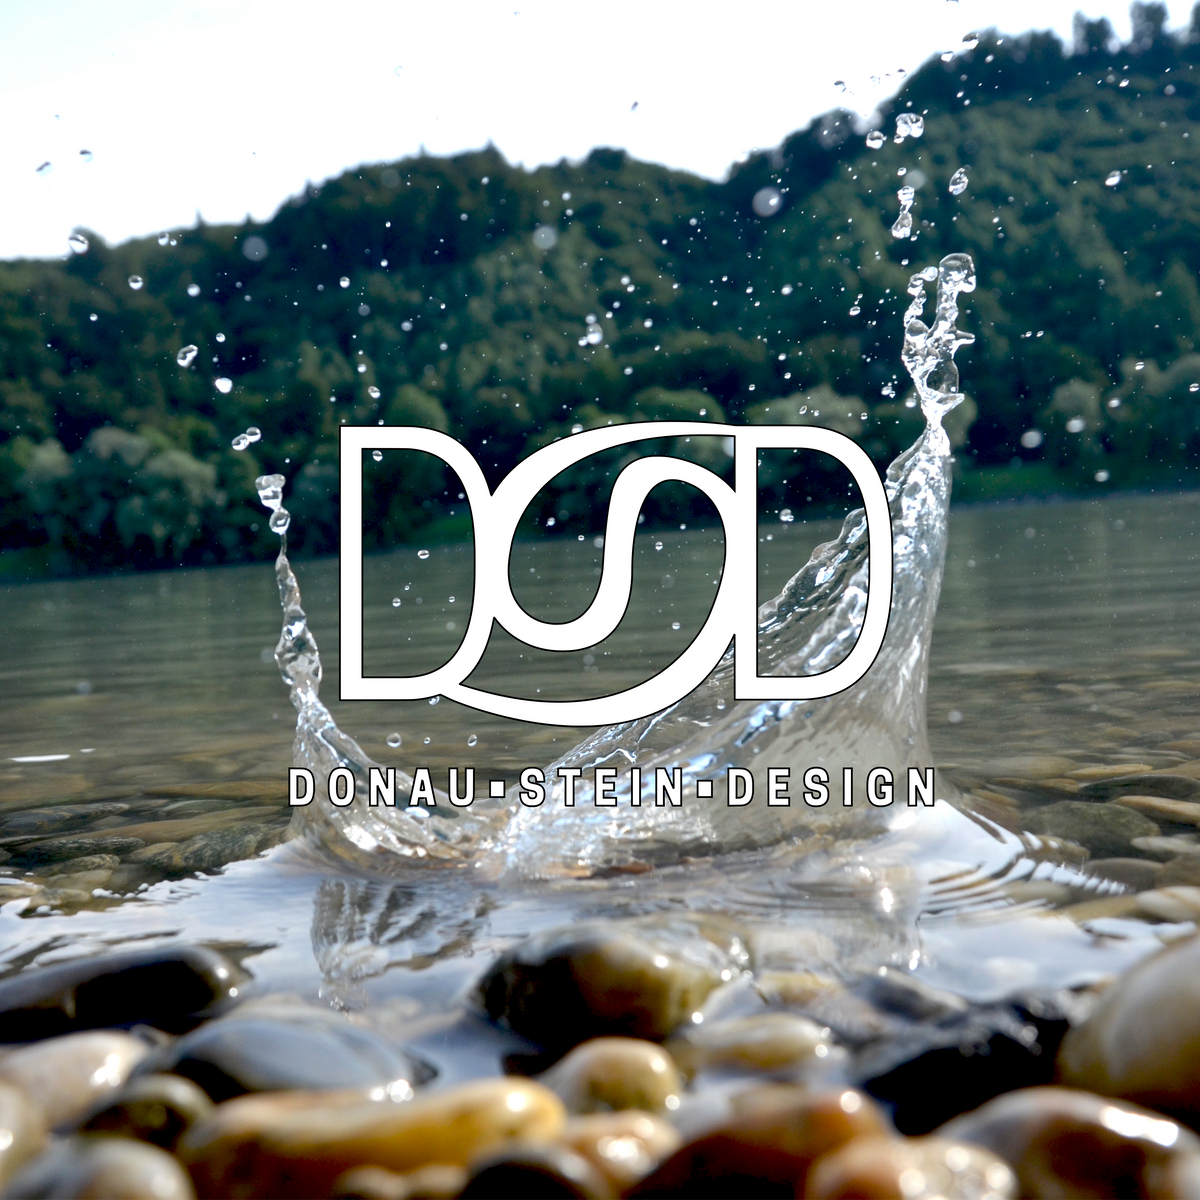 (c) Donausteindesign.com